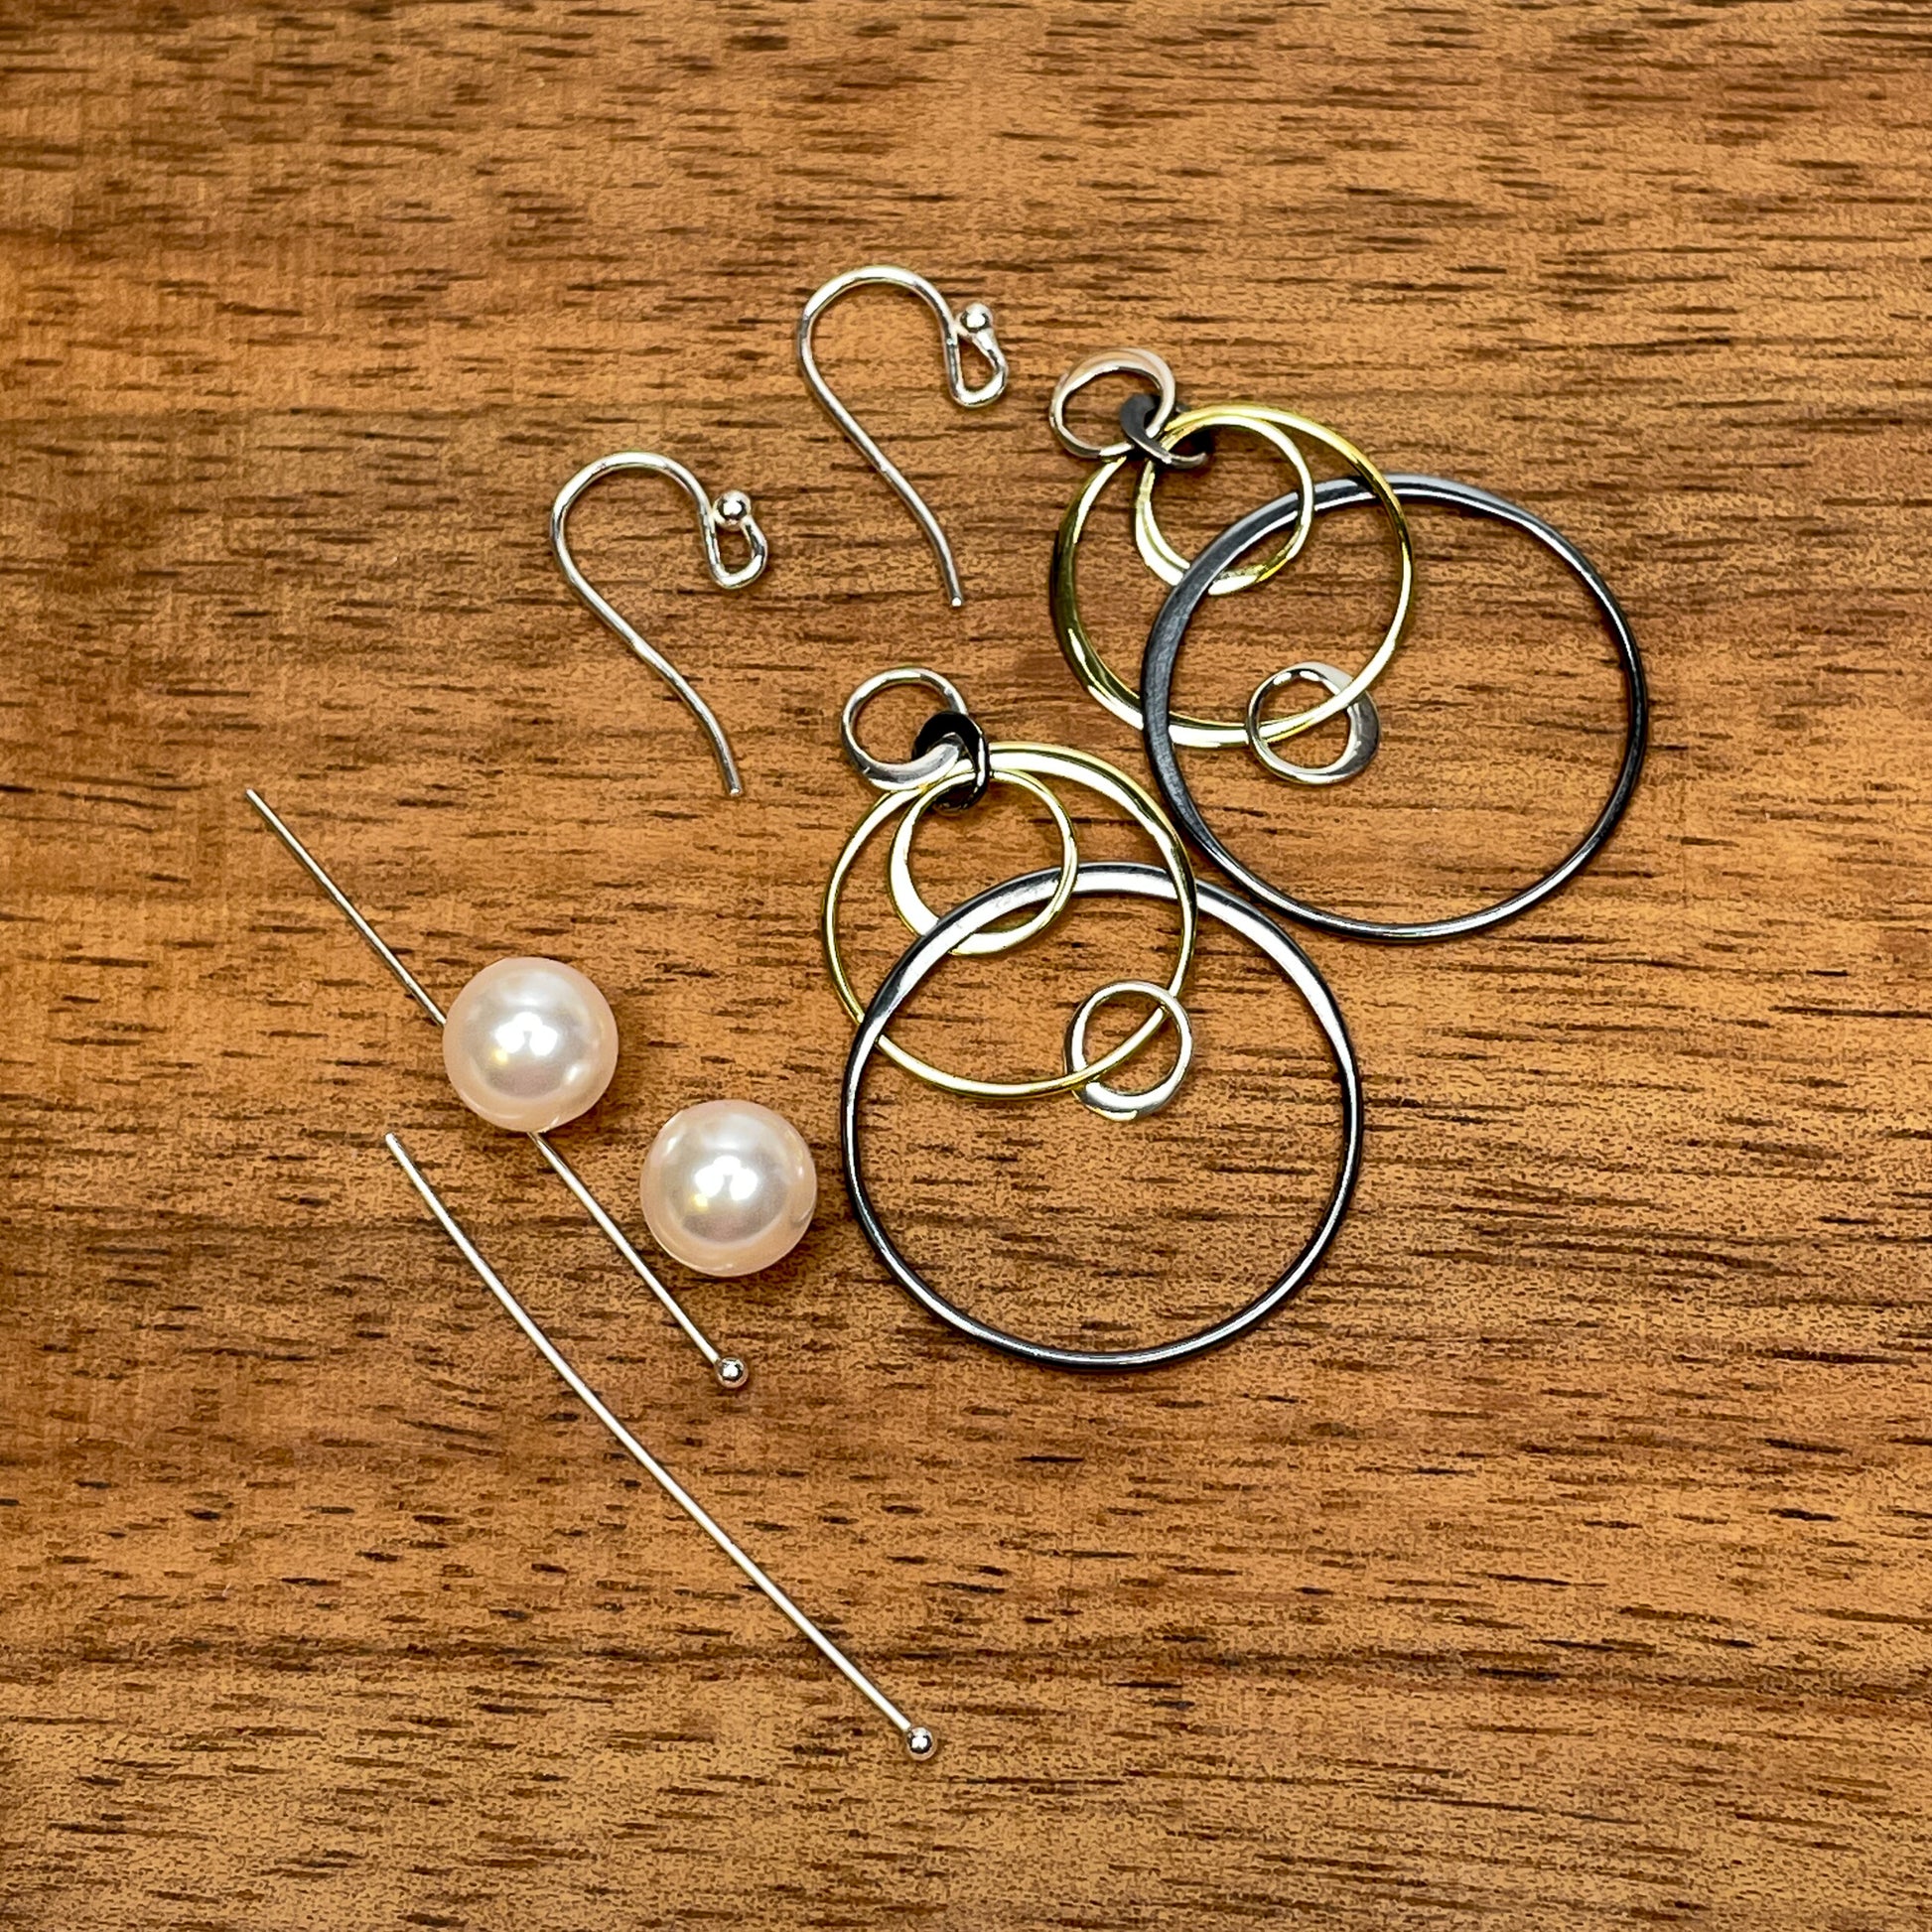 Bubble Bauble Earring - Kit or Finished Earrings